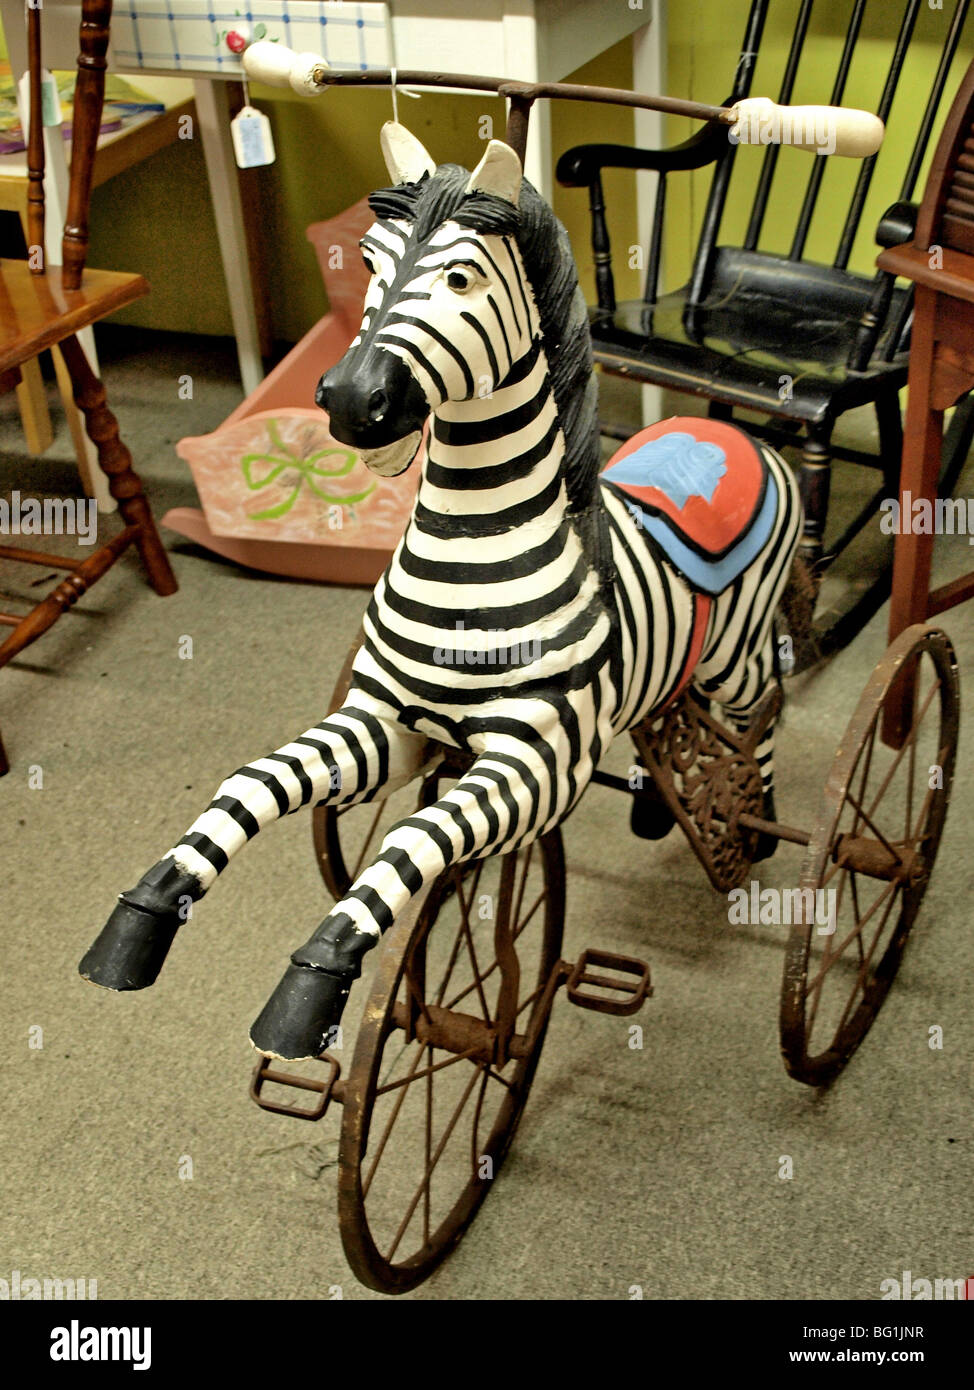 Bambini bambini bambino triciclo bike zebra scolpite tre ruote sedile rosso Foto Stock